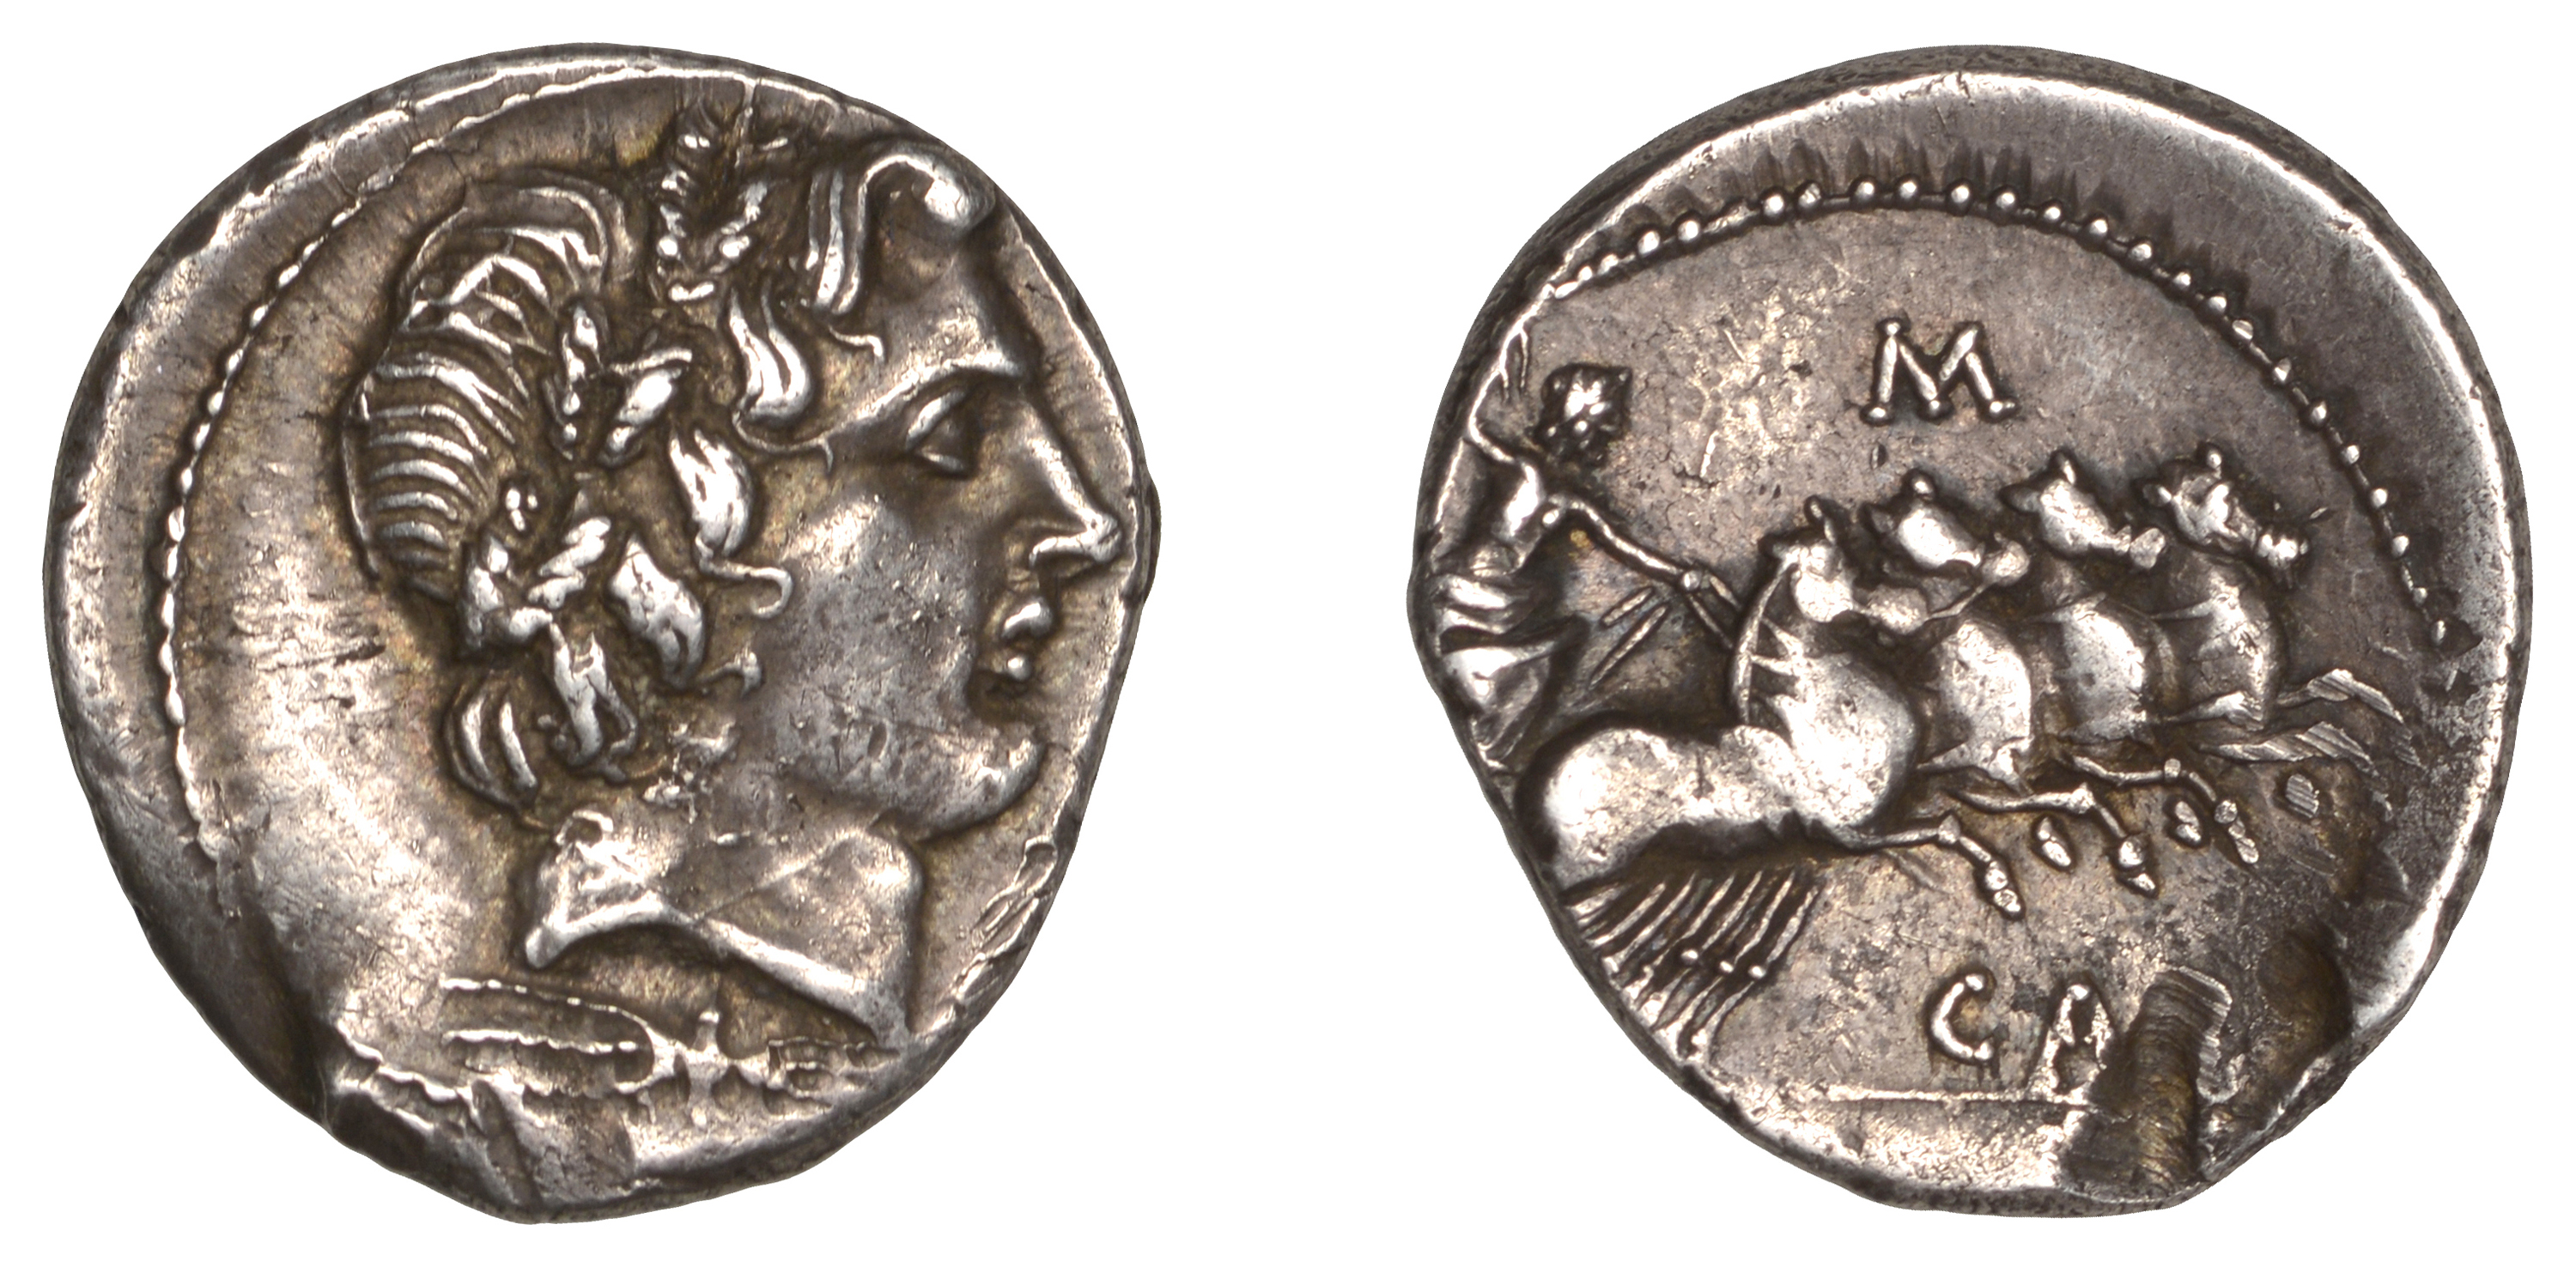 Roman Republican Coinage, Gargilius, Ogulnius and Vergilius, Denarius, c. 86, head of young...